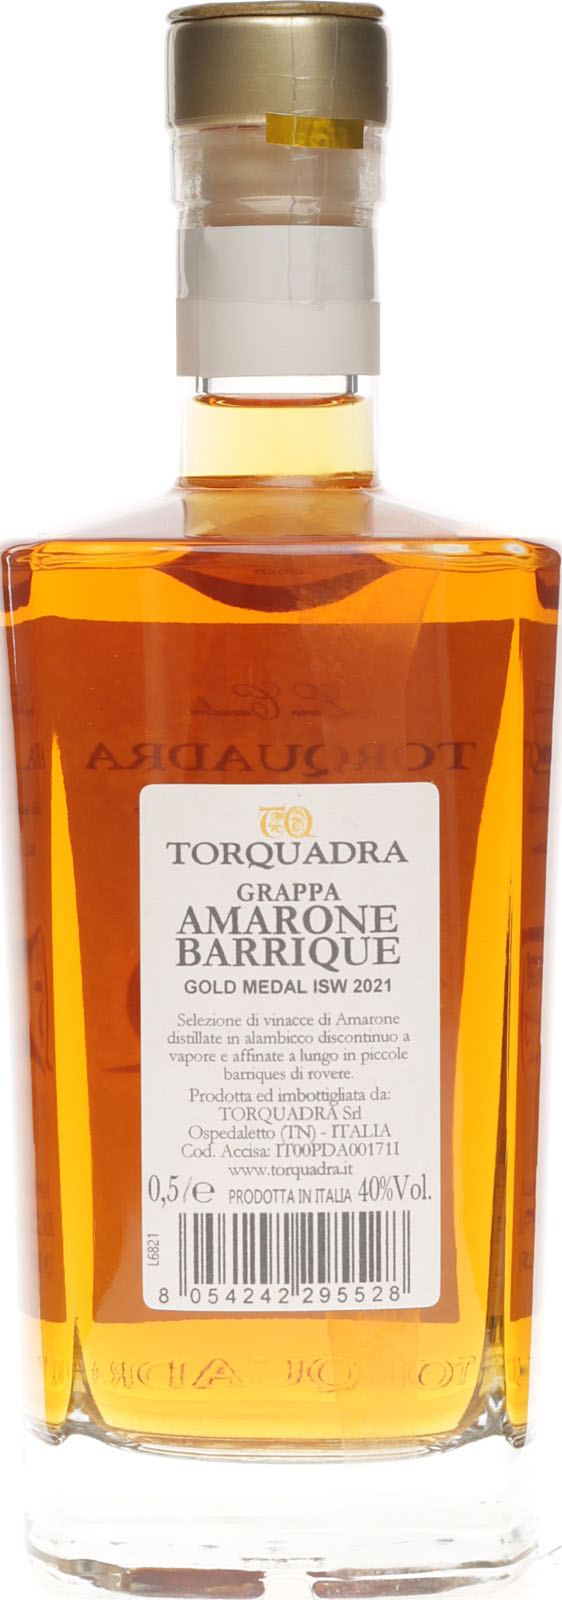 Torquadra mit 40% Amarone di Barrique von Grappa